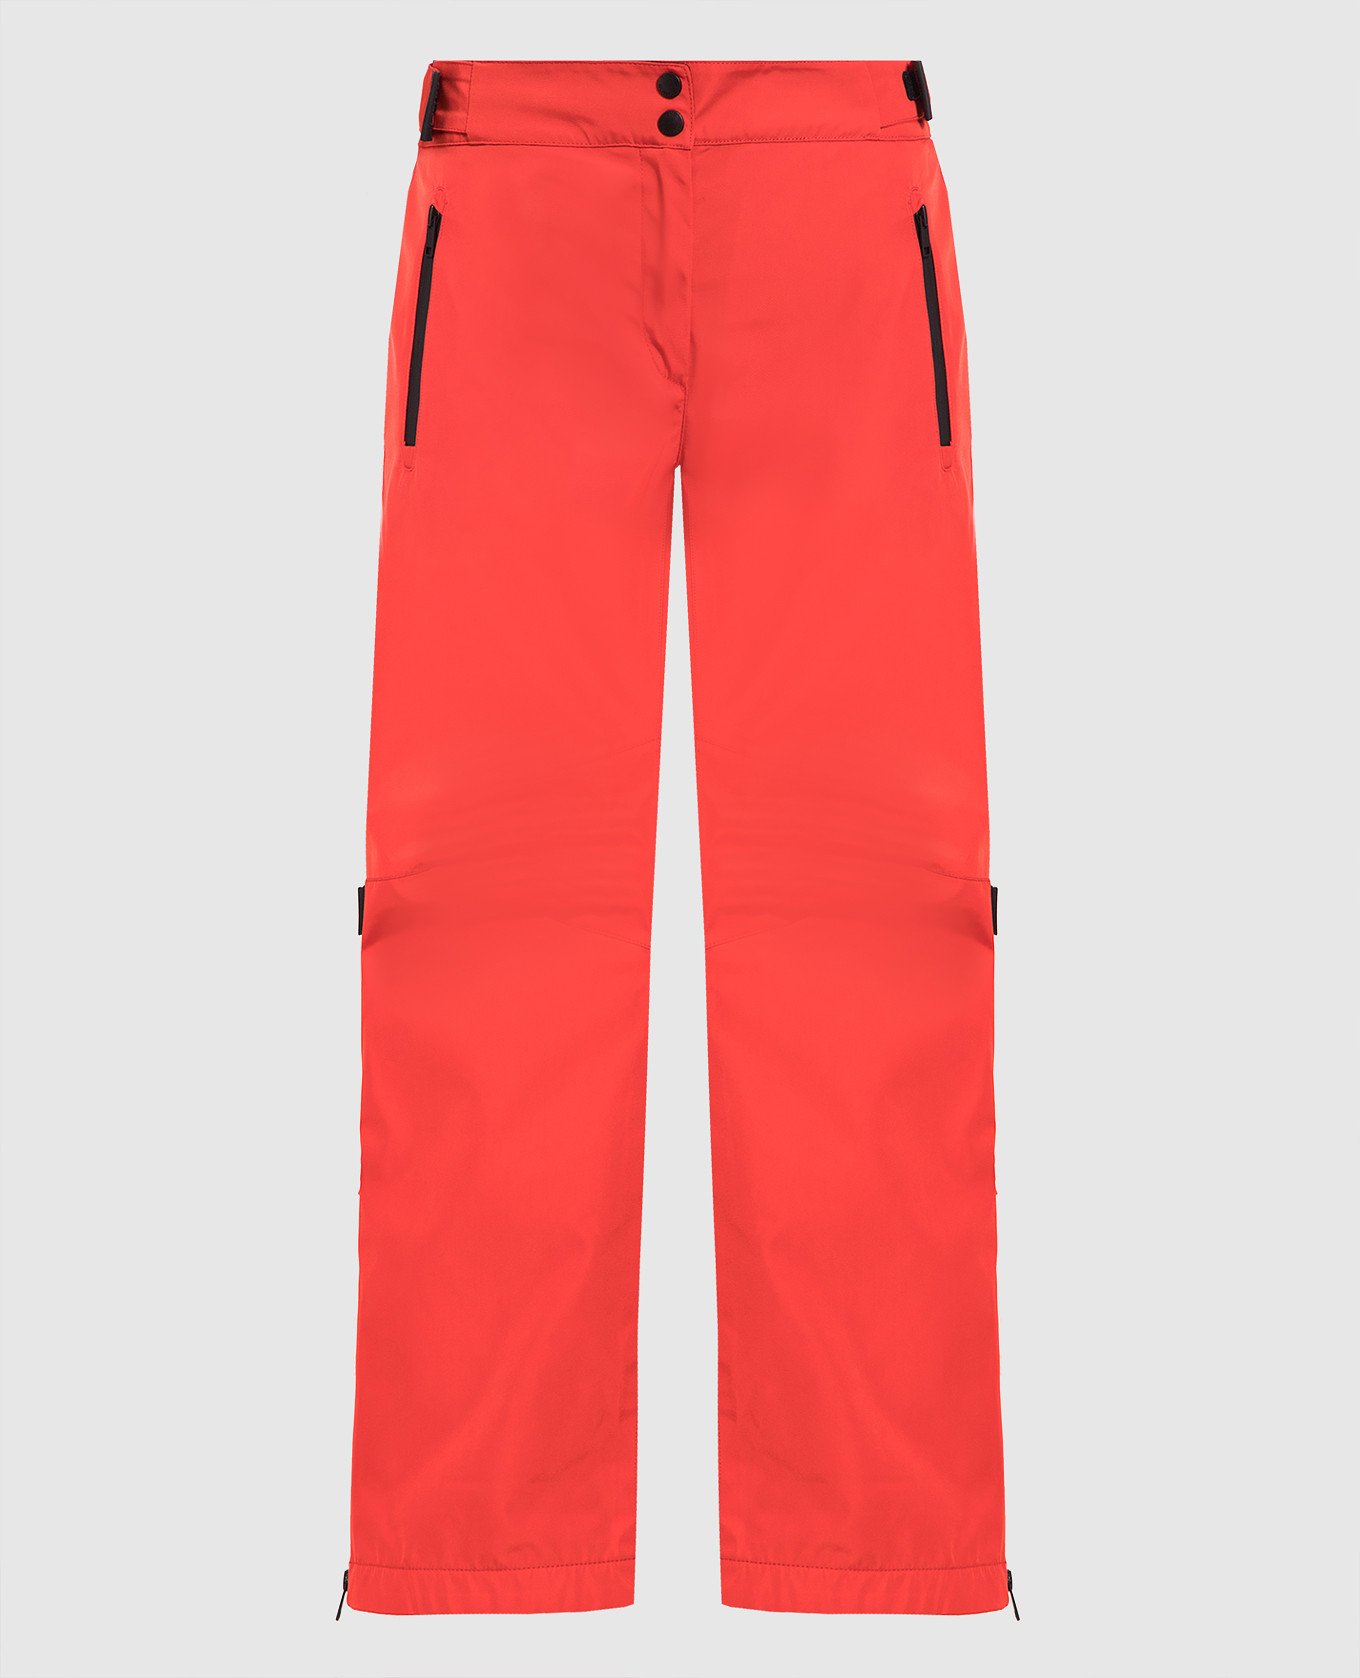 Red ski pants